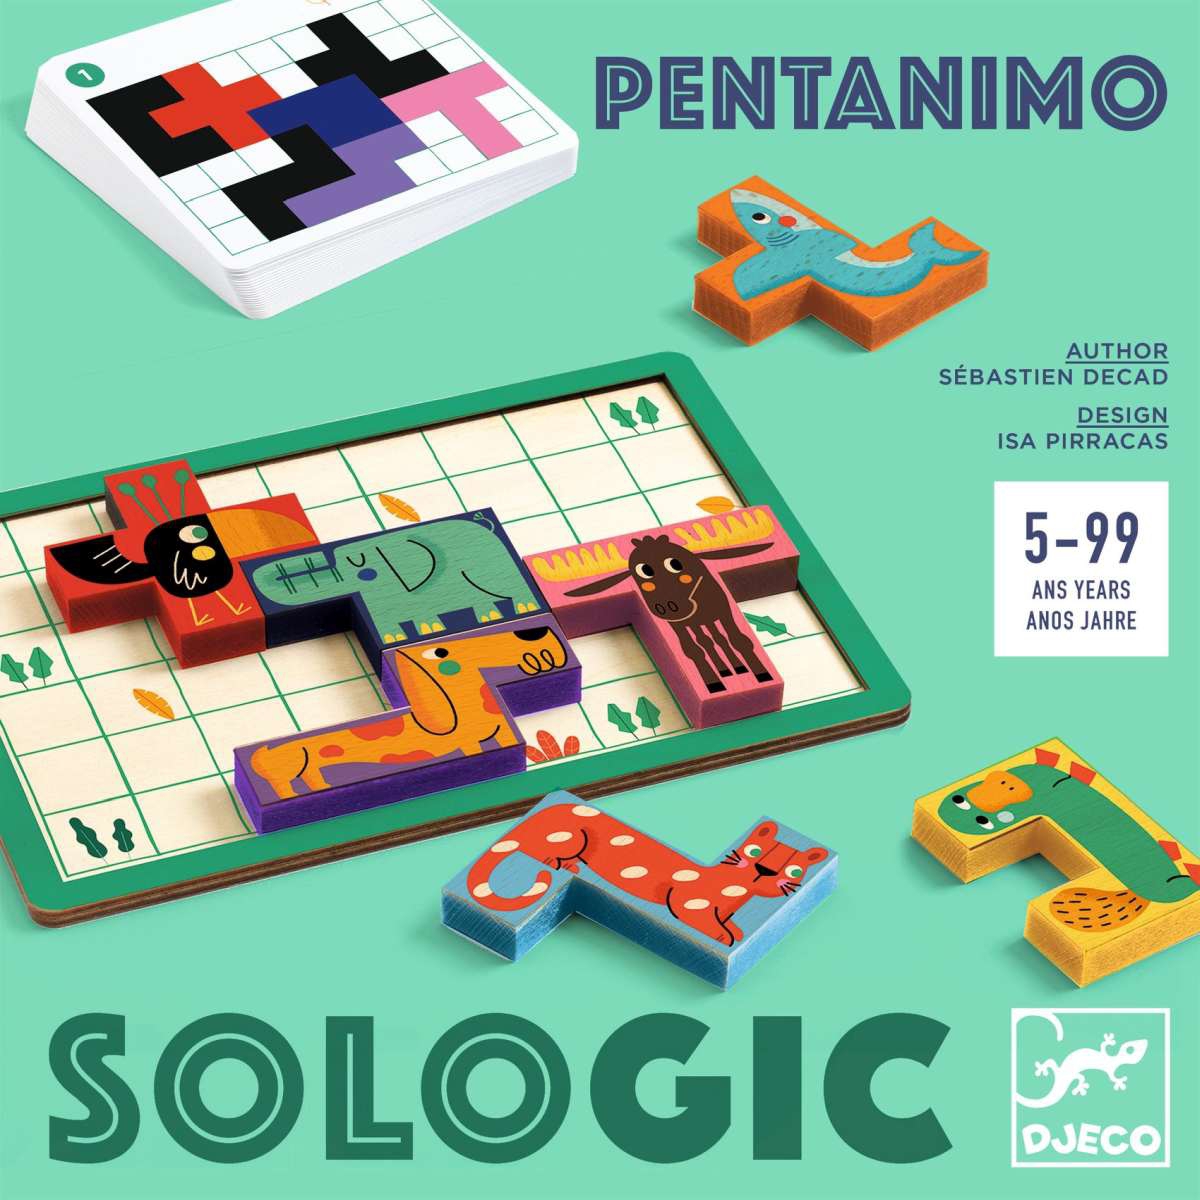 »Pentanimo Sologic« —DJECO